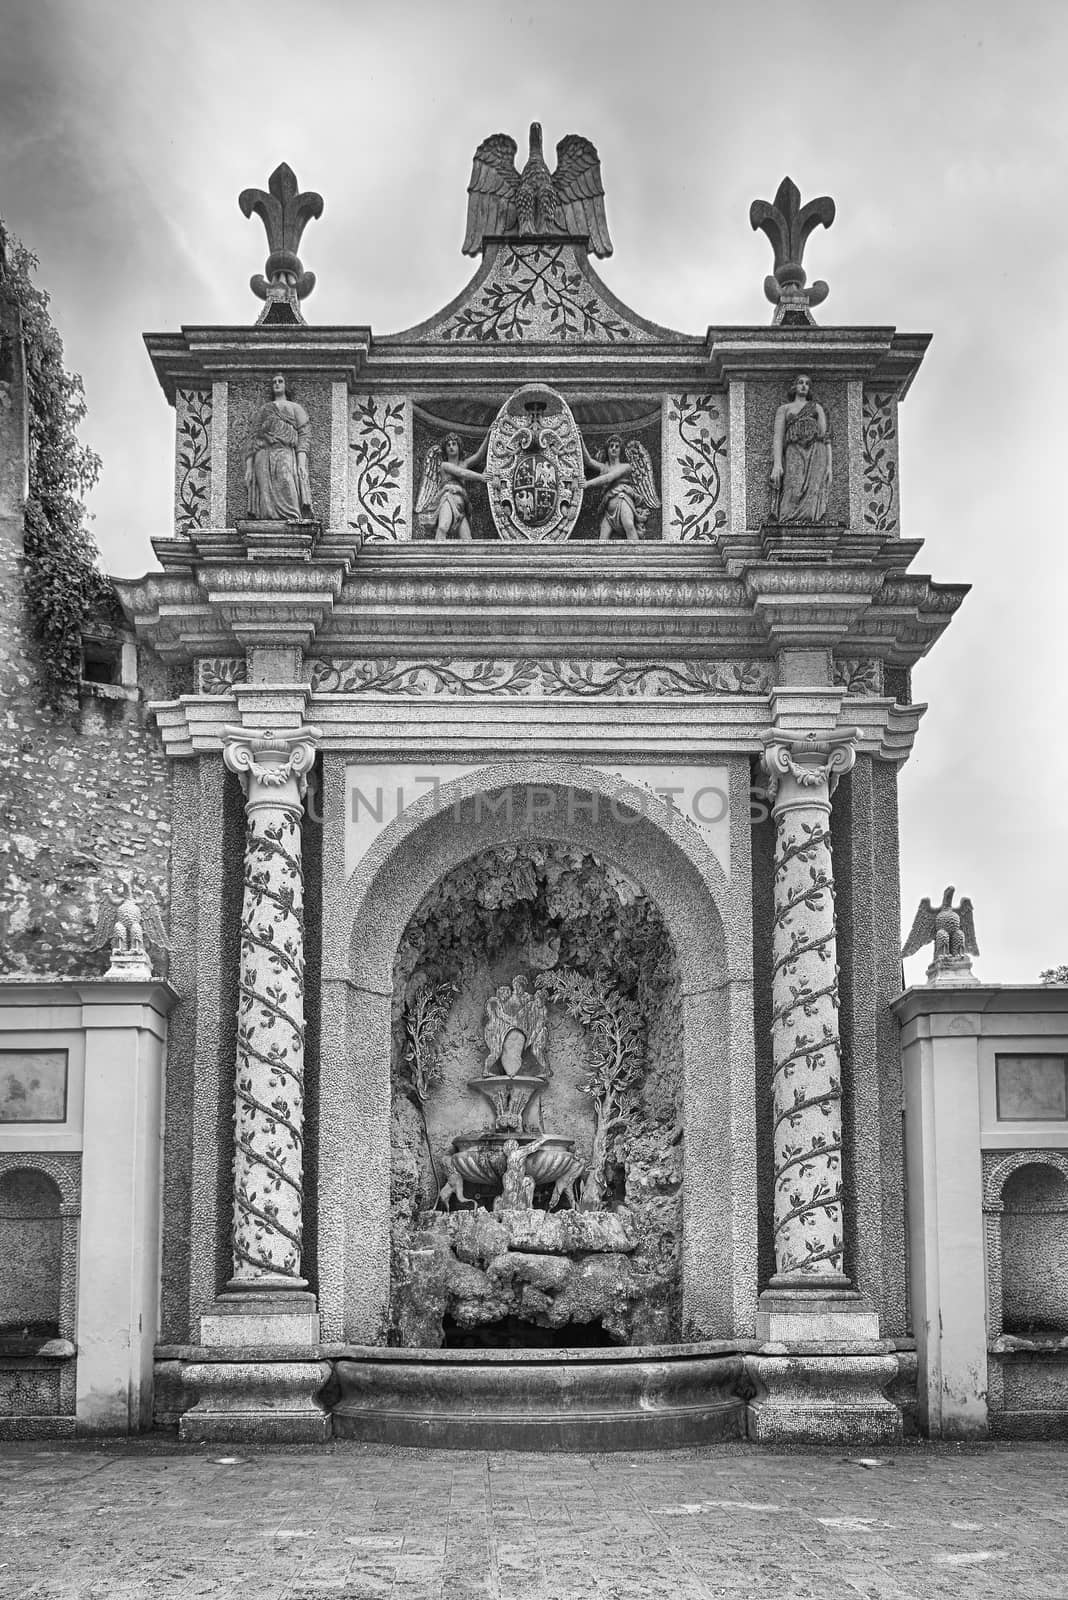 Courtyard of the Fountain of the Owl, Villa d'Este, Italy by marcorubino